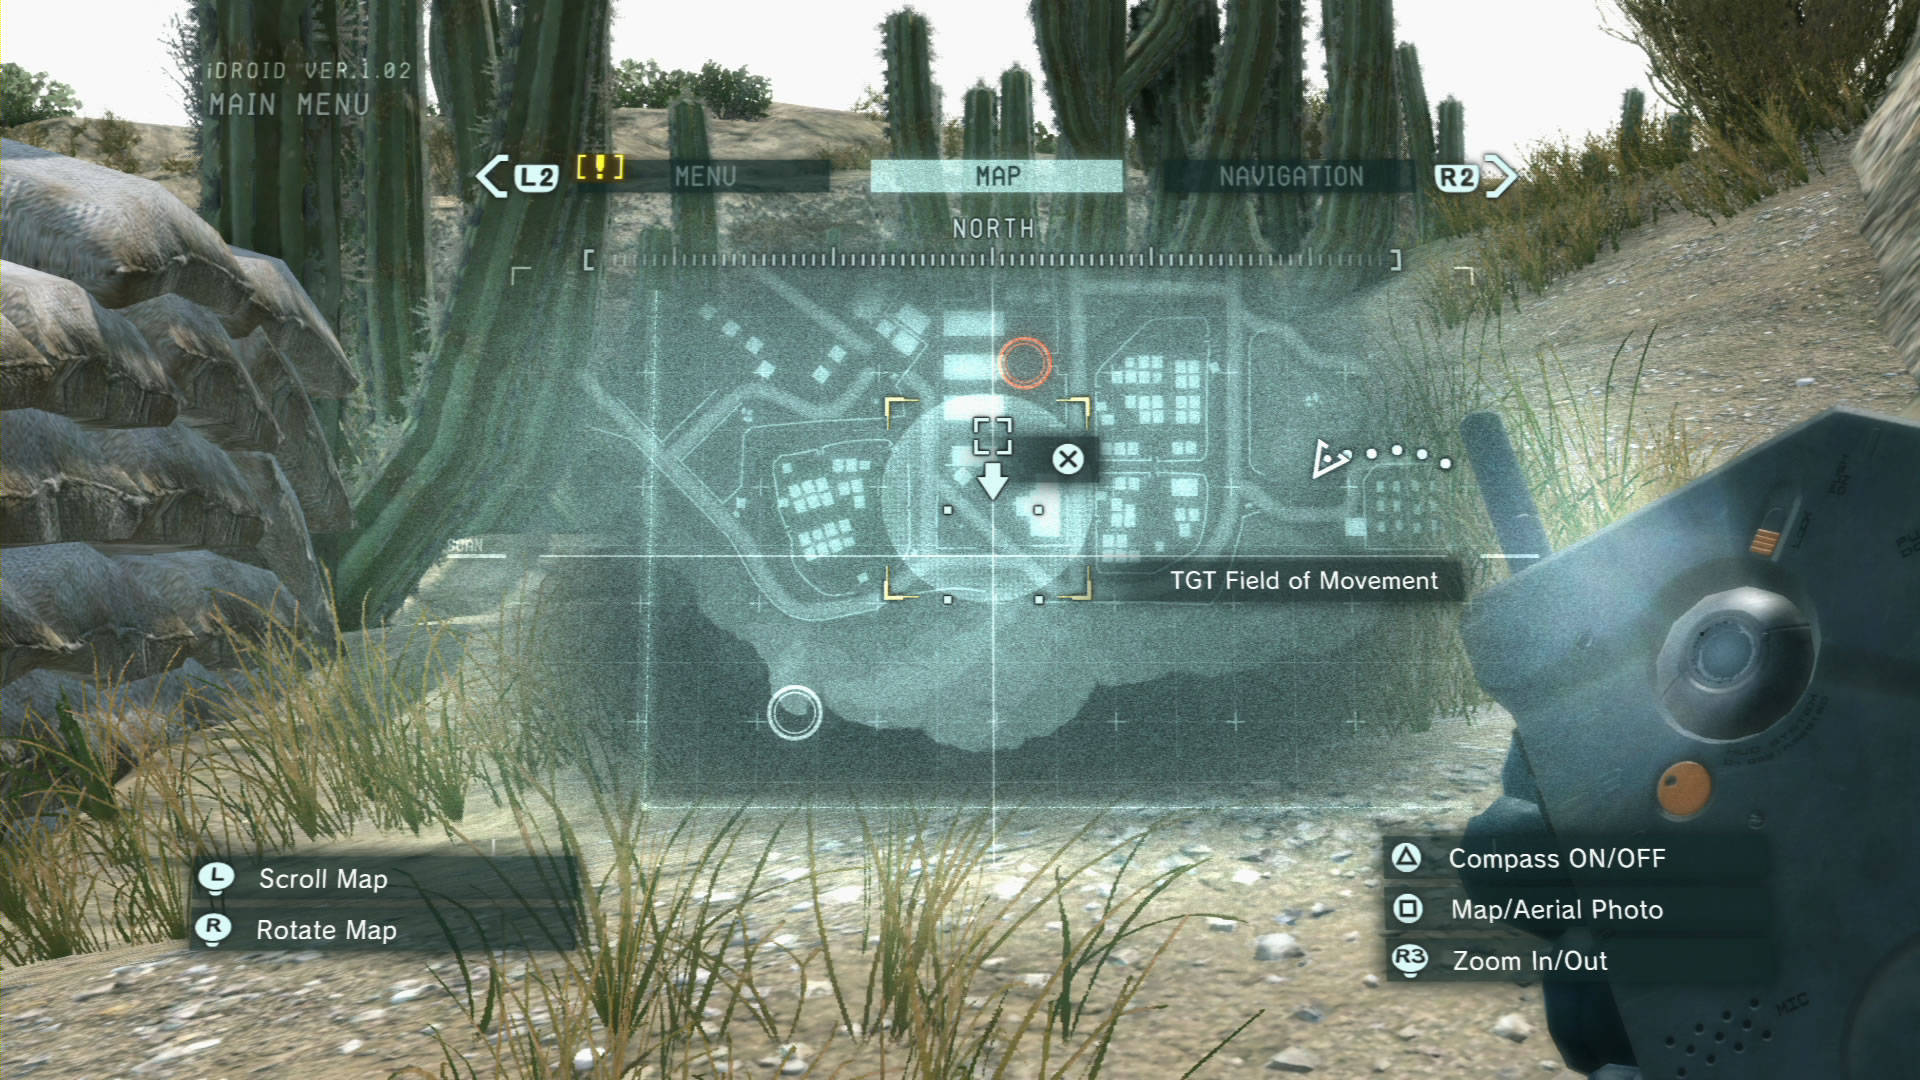  Nouvelles images de Metal Gear Solid V : Ground Zeroes